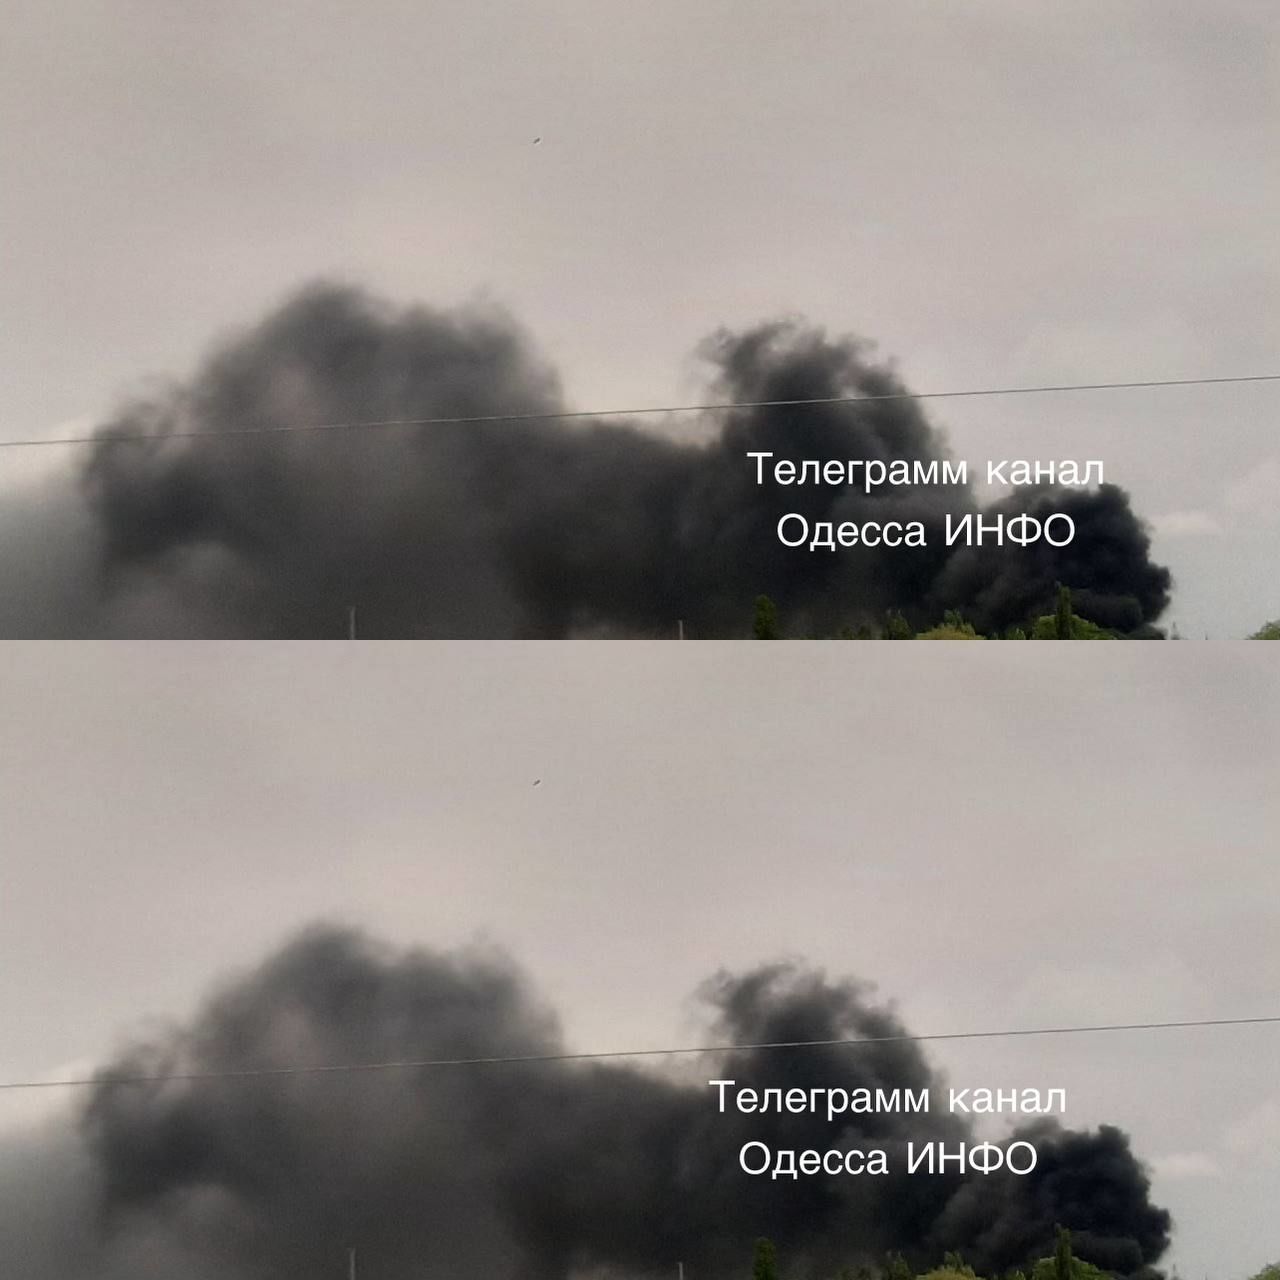 Після вранішніх вибухів над Одесою здійнявся чорний дим. Фото: Телеграм-канал 